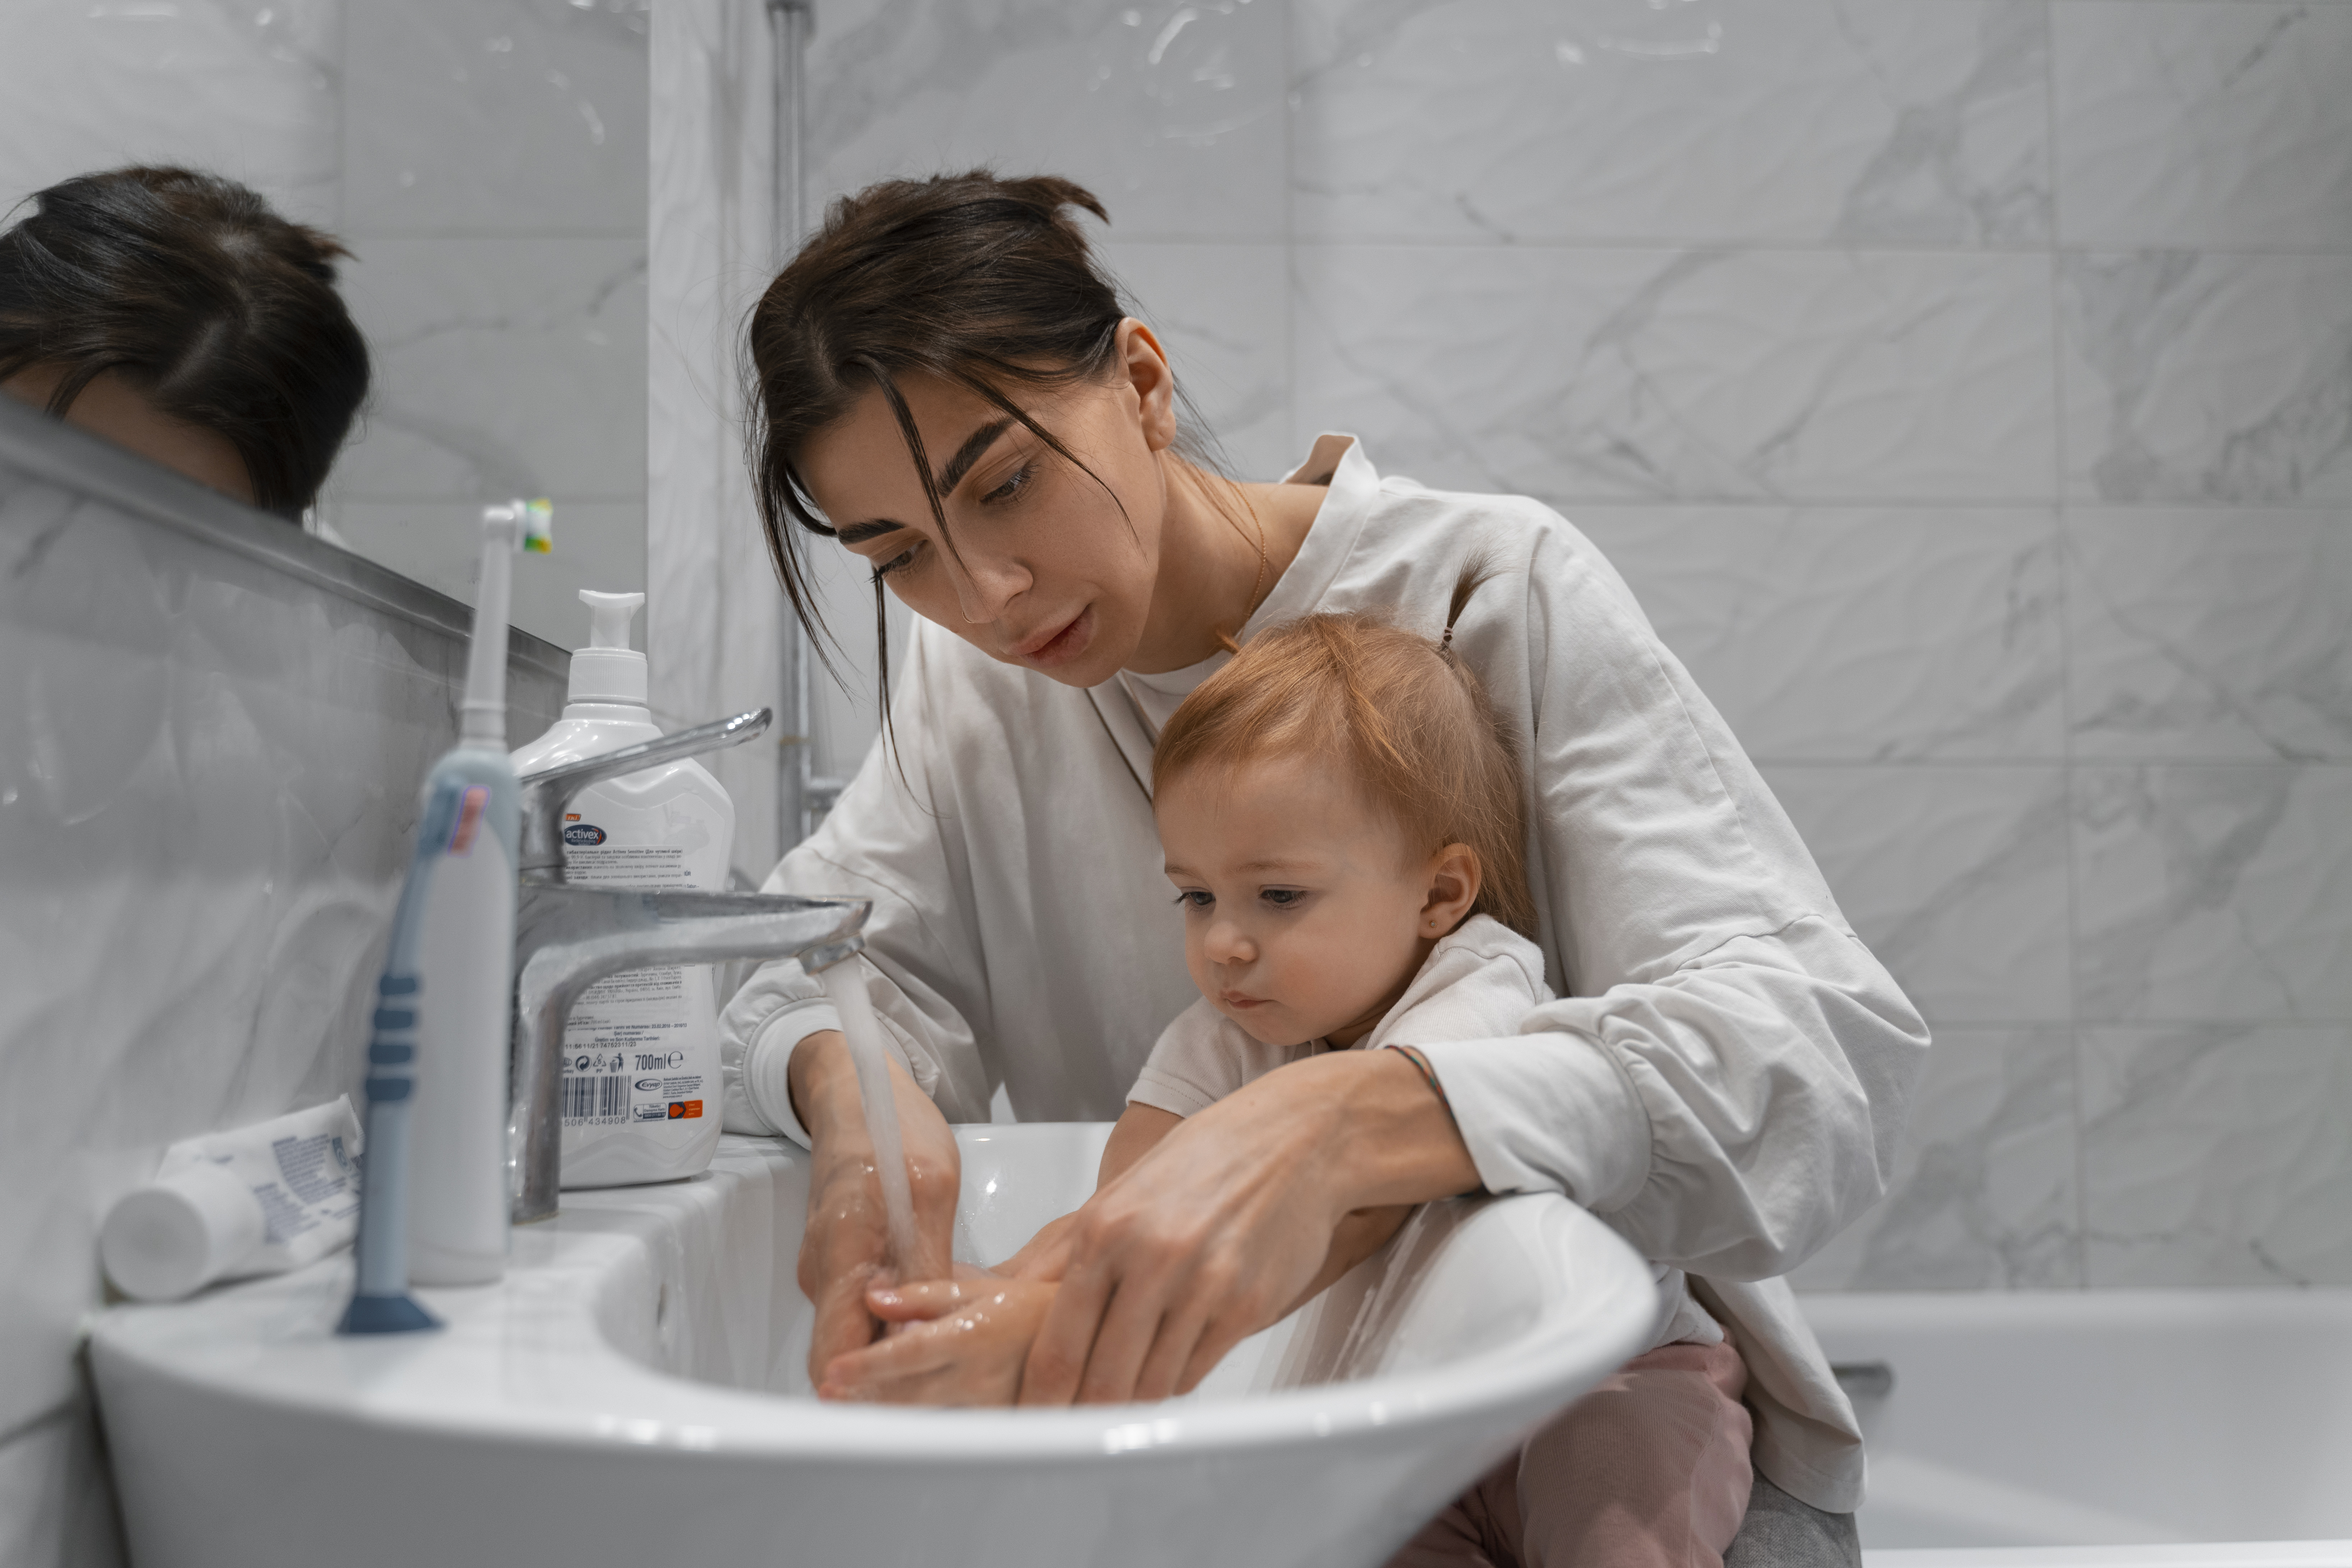 Día Mundial de la Higiene: 5 consejos para lograr buenos hábitos de higiene en nuestros hijos